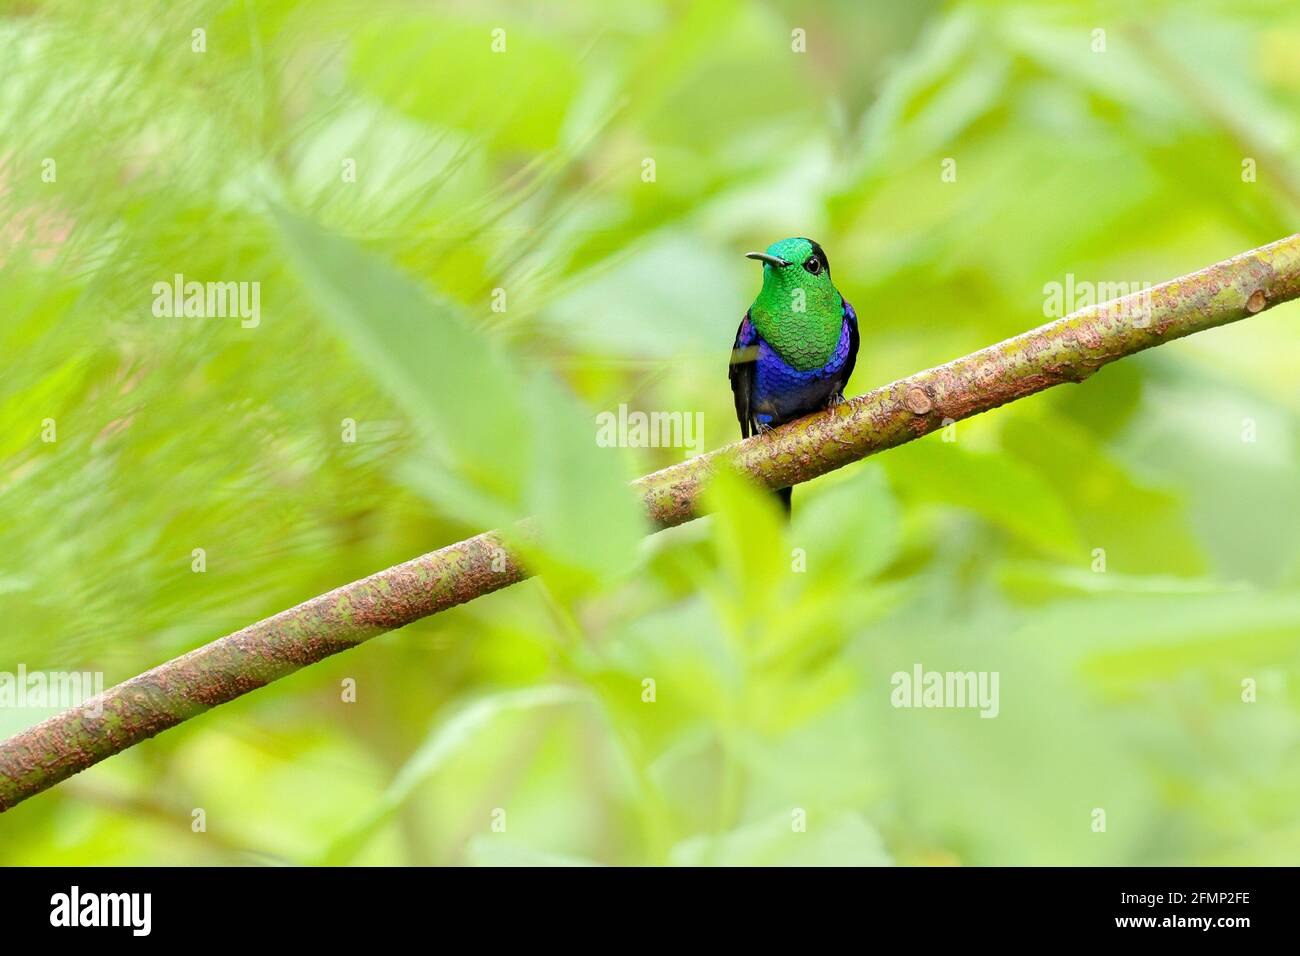 Pinna di bosco con corona di porpora, Thalurania colombica fannyi, colibrì nella foresta tropicale colombiana, blu un uccello verde lucido nell'habitat naturale. Foto Stock